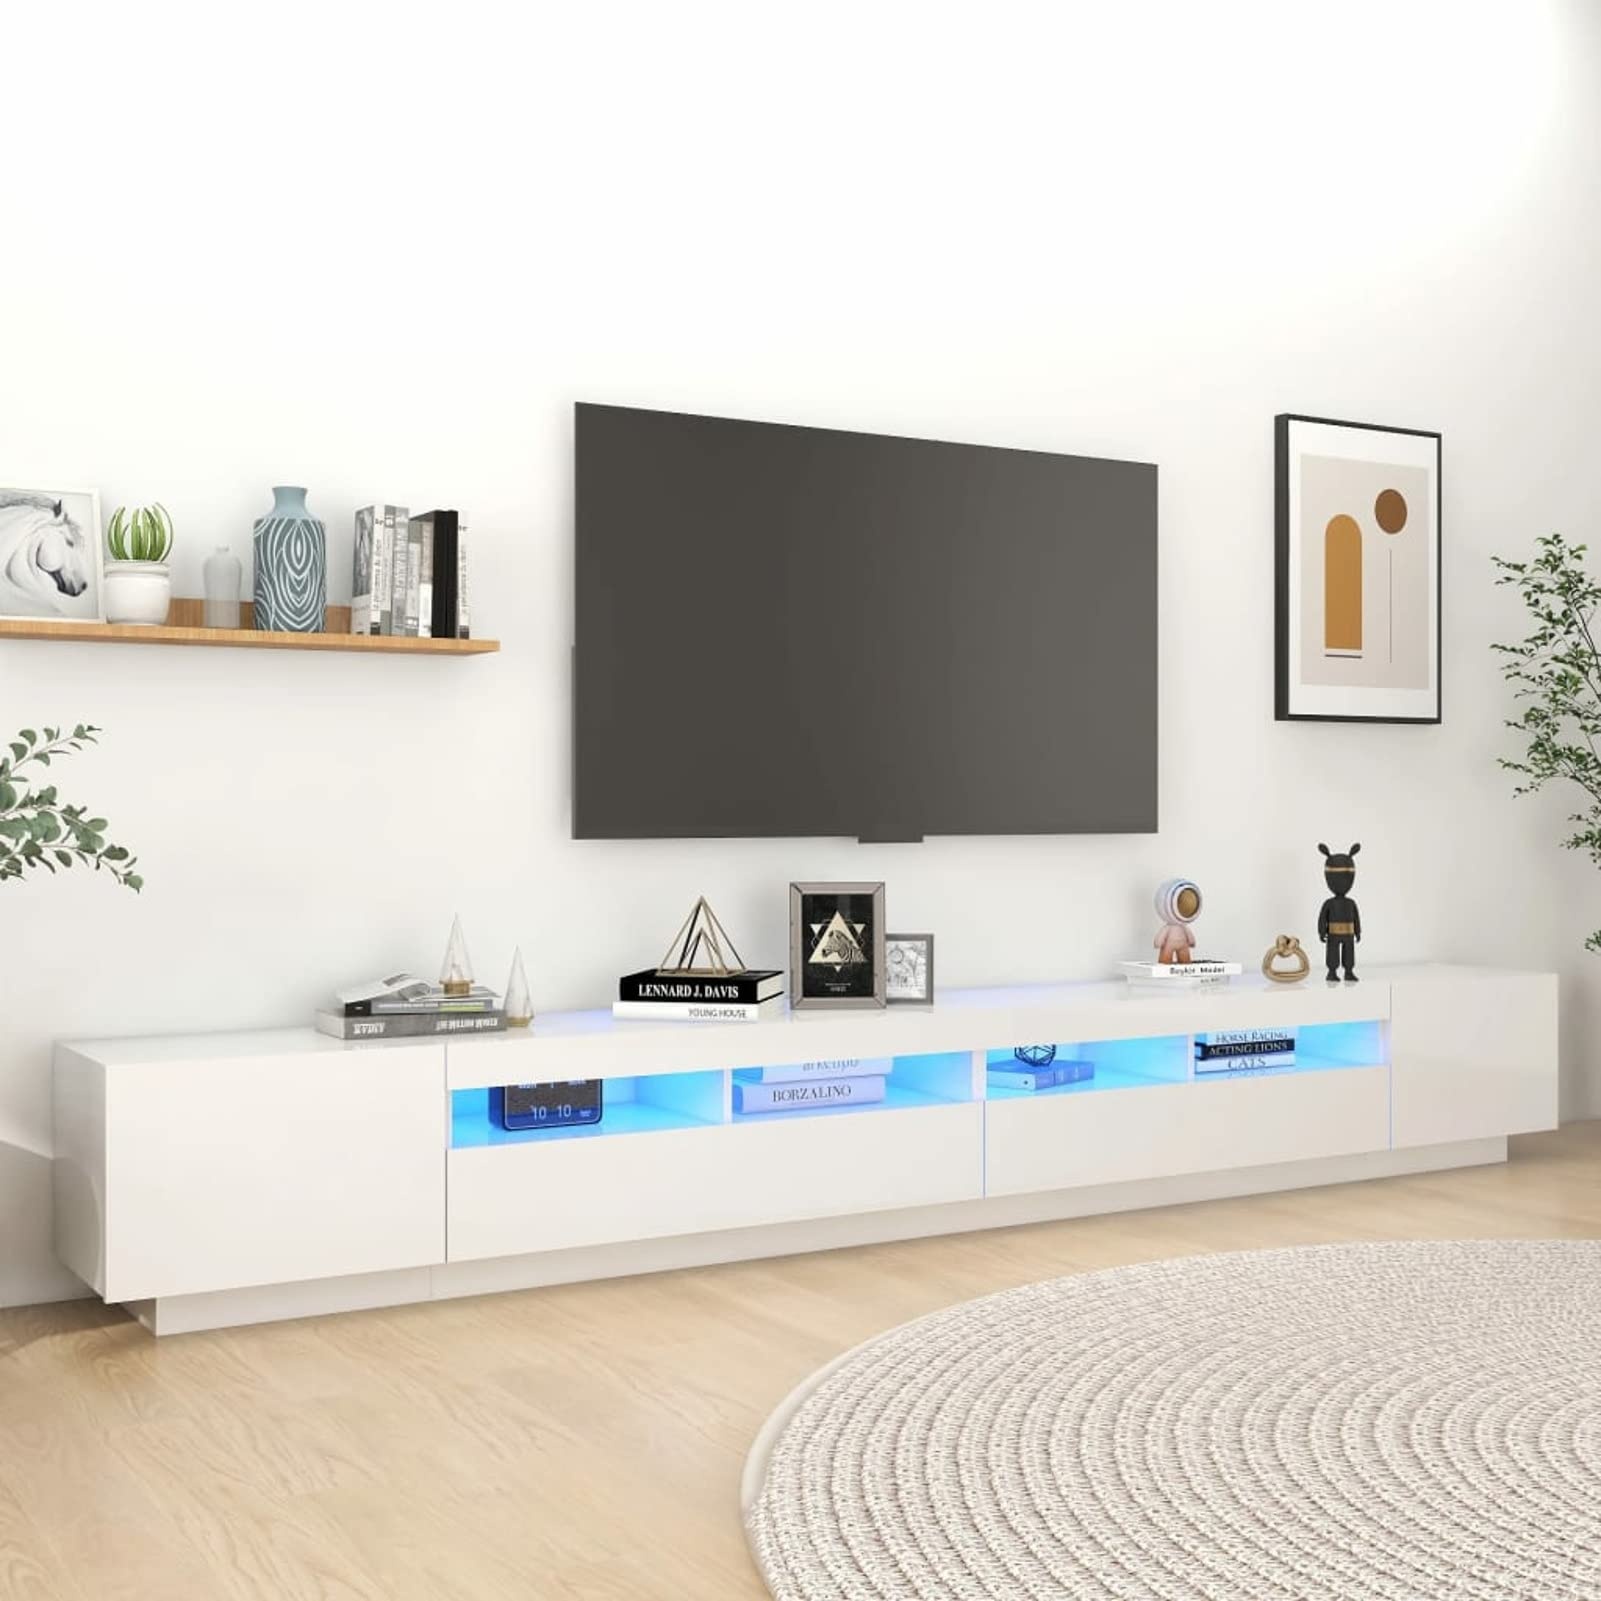 SECOLI Lowboard TV mit LED TV Schrank LED 300 cm TV Board Fernsehschrank TV-Schrank TV-Kommode TV Bank TV Möbel Sideboard für Wohnzimmer Schlafzimmer Hochglanz-Weiß